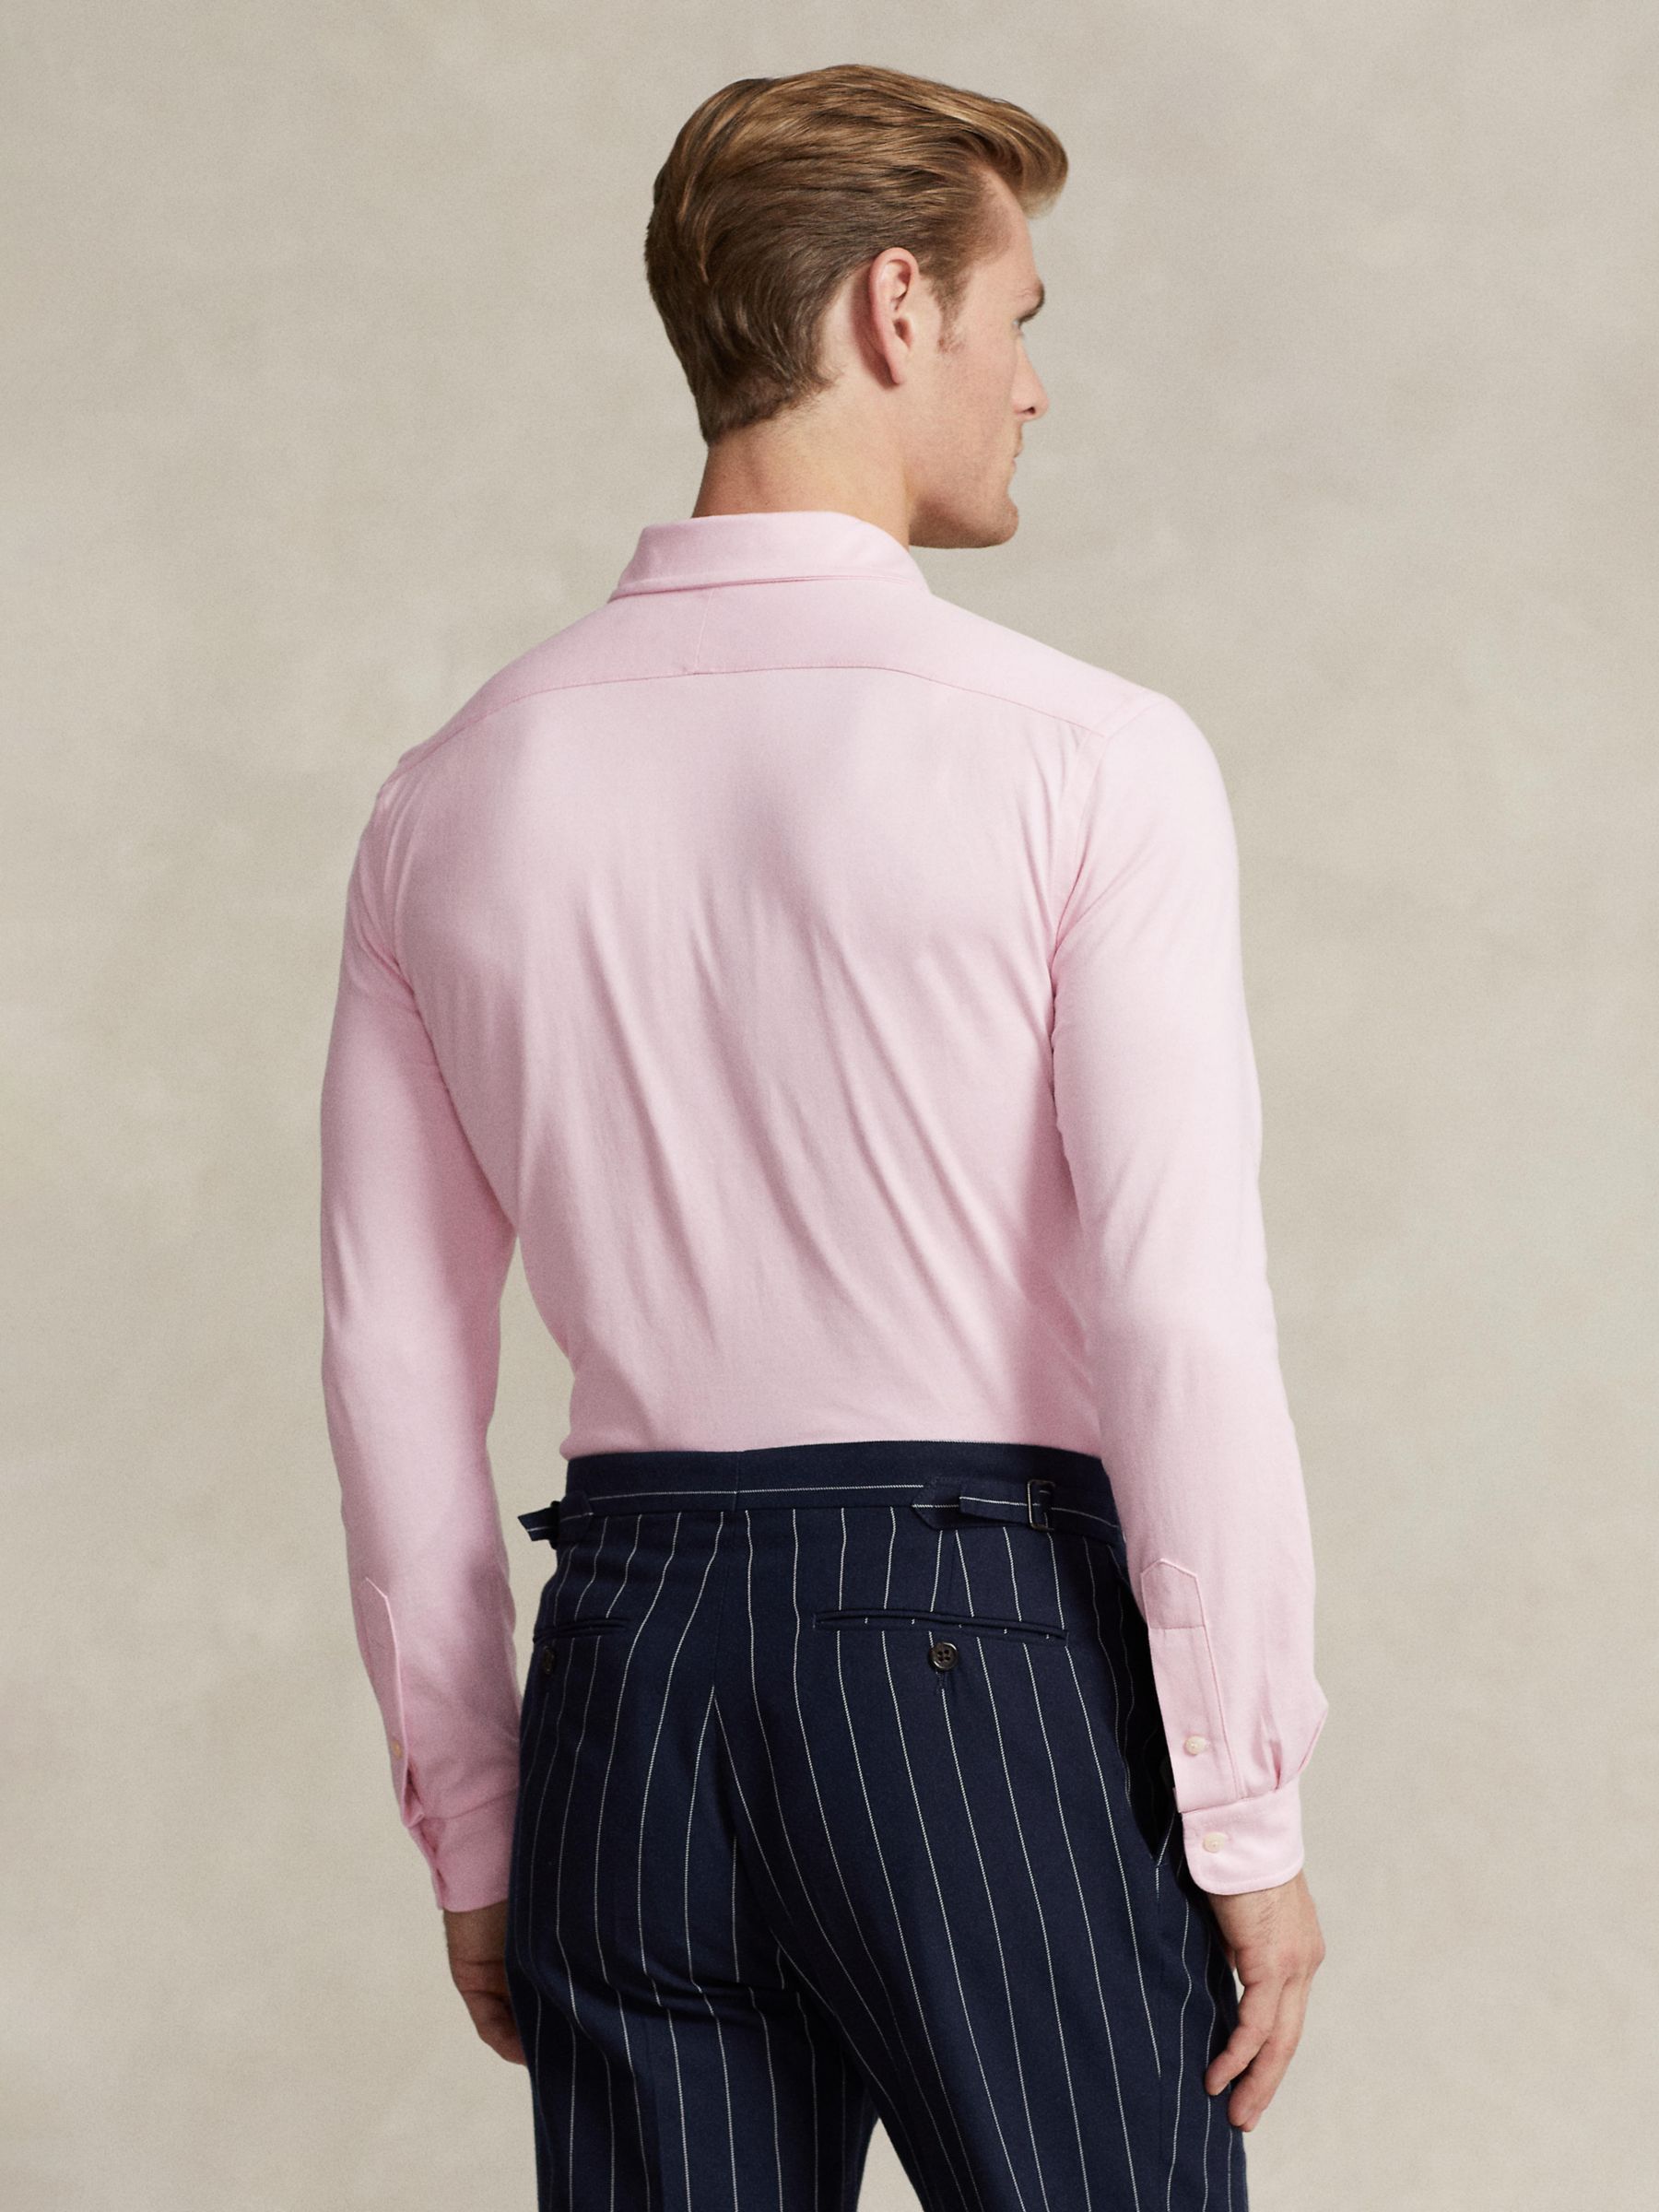 Buy Ralph Lauren Long Sleeve Jersey Shirt, Pink Online at johnlewis.com